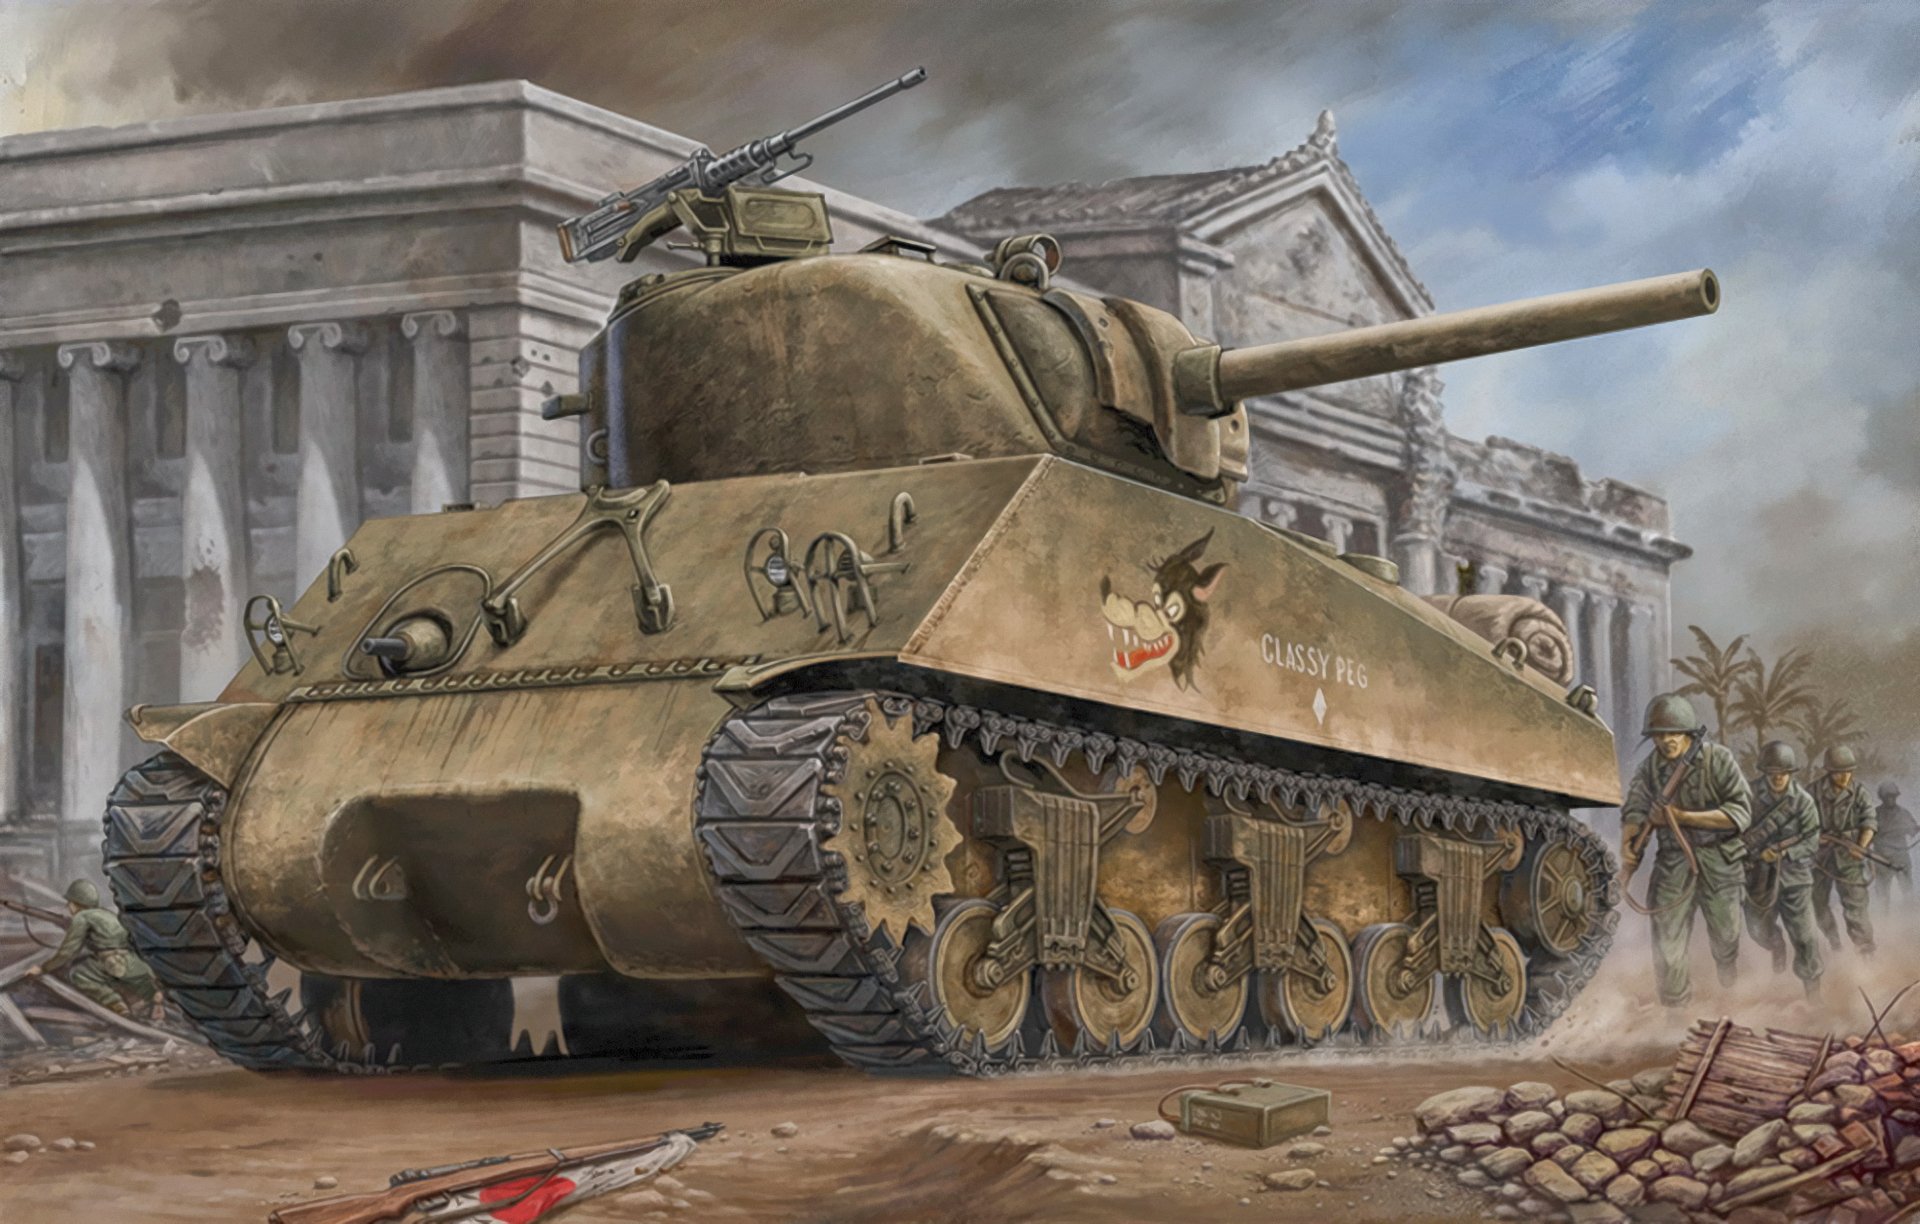 sherman tank battles